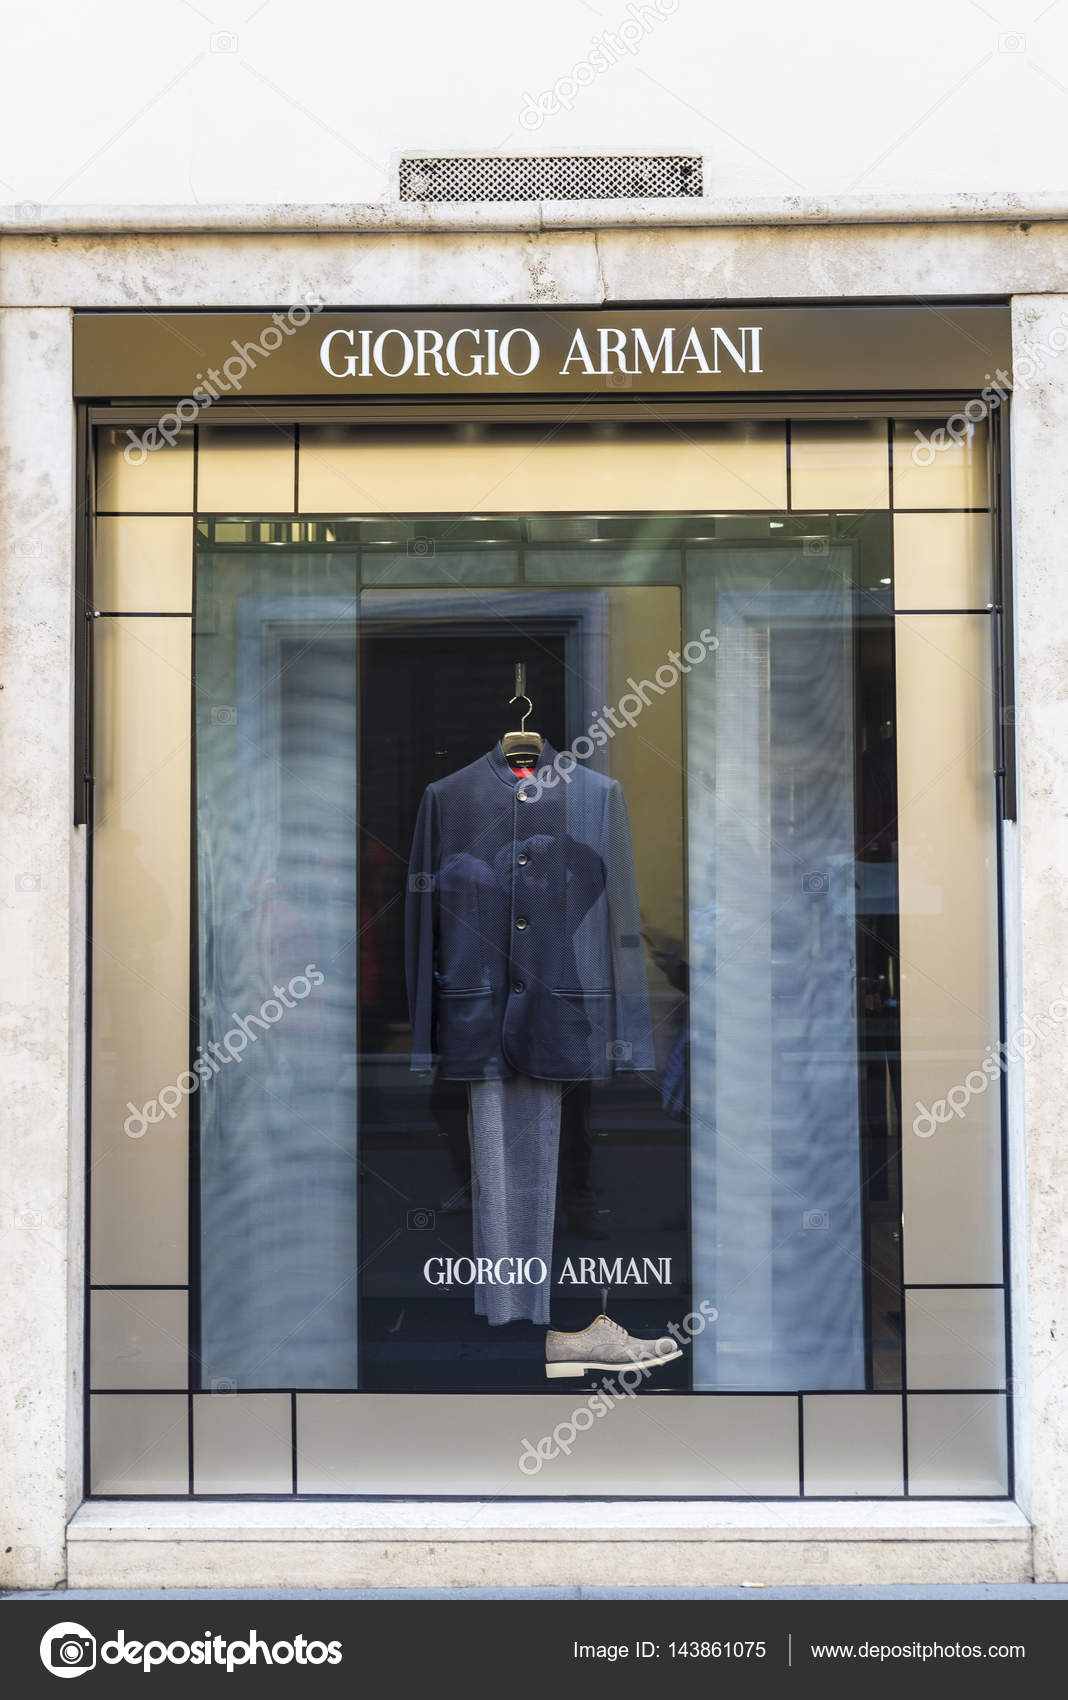 Giorgio Armani shop in Rome, Italy 